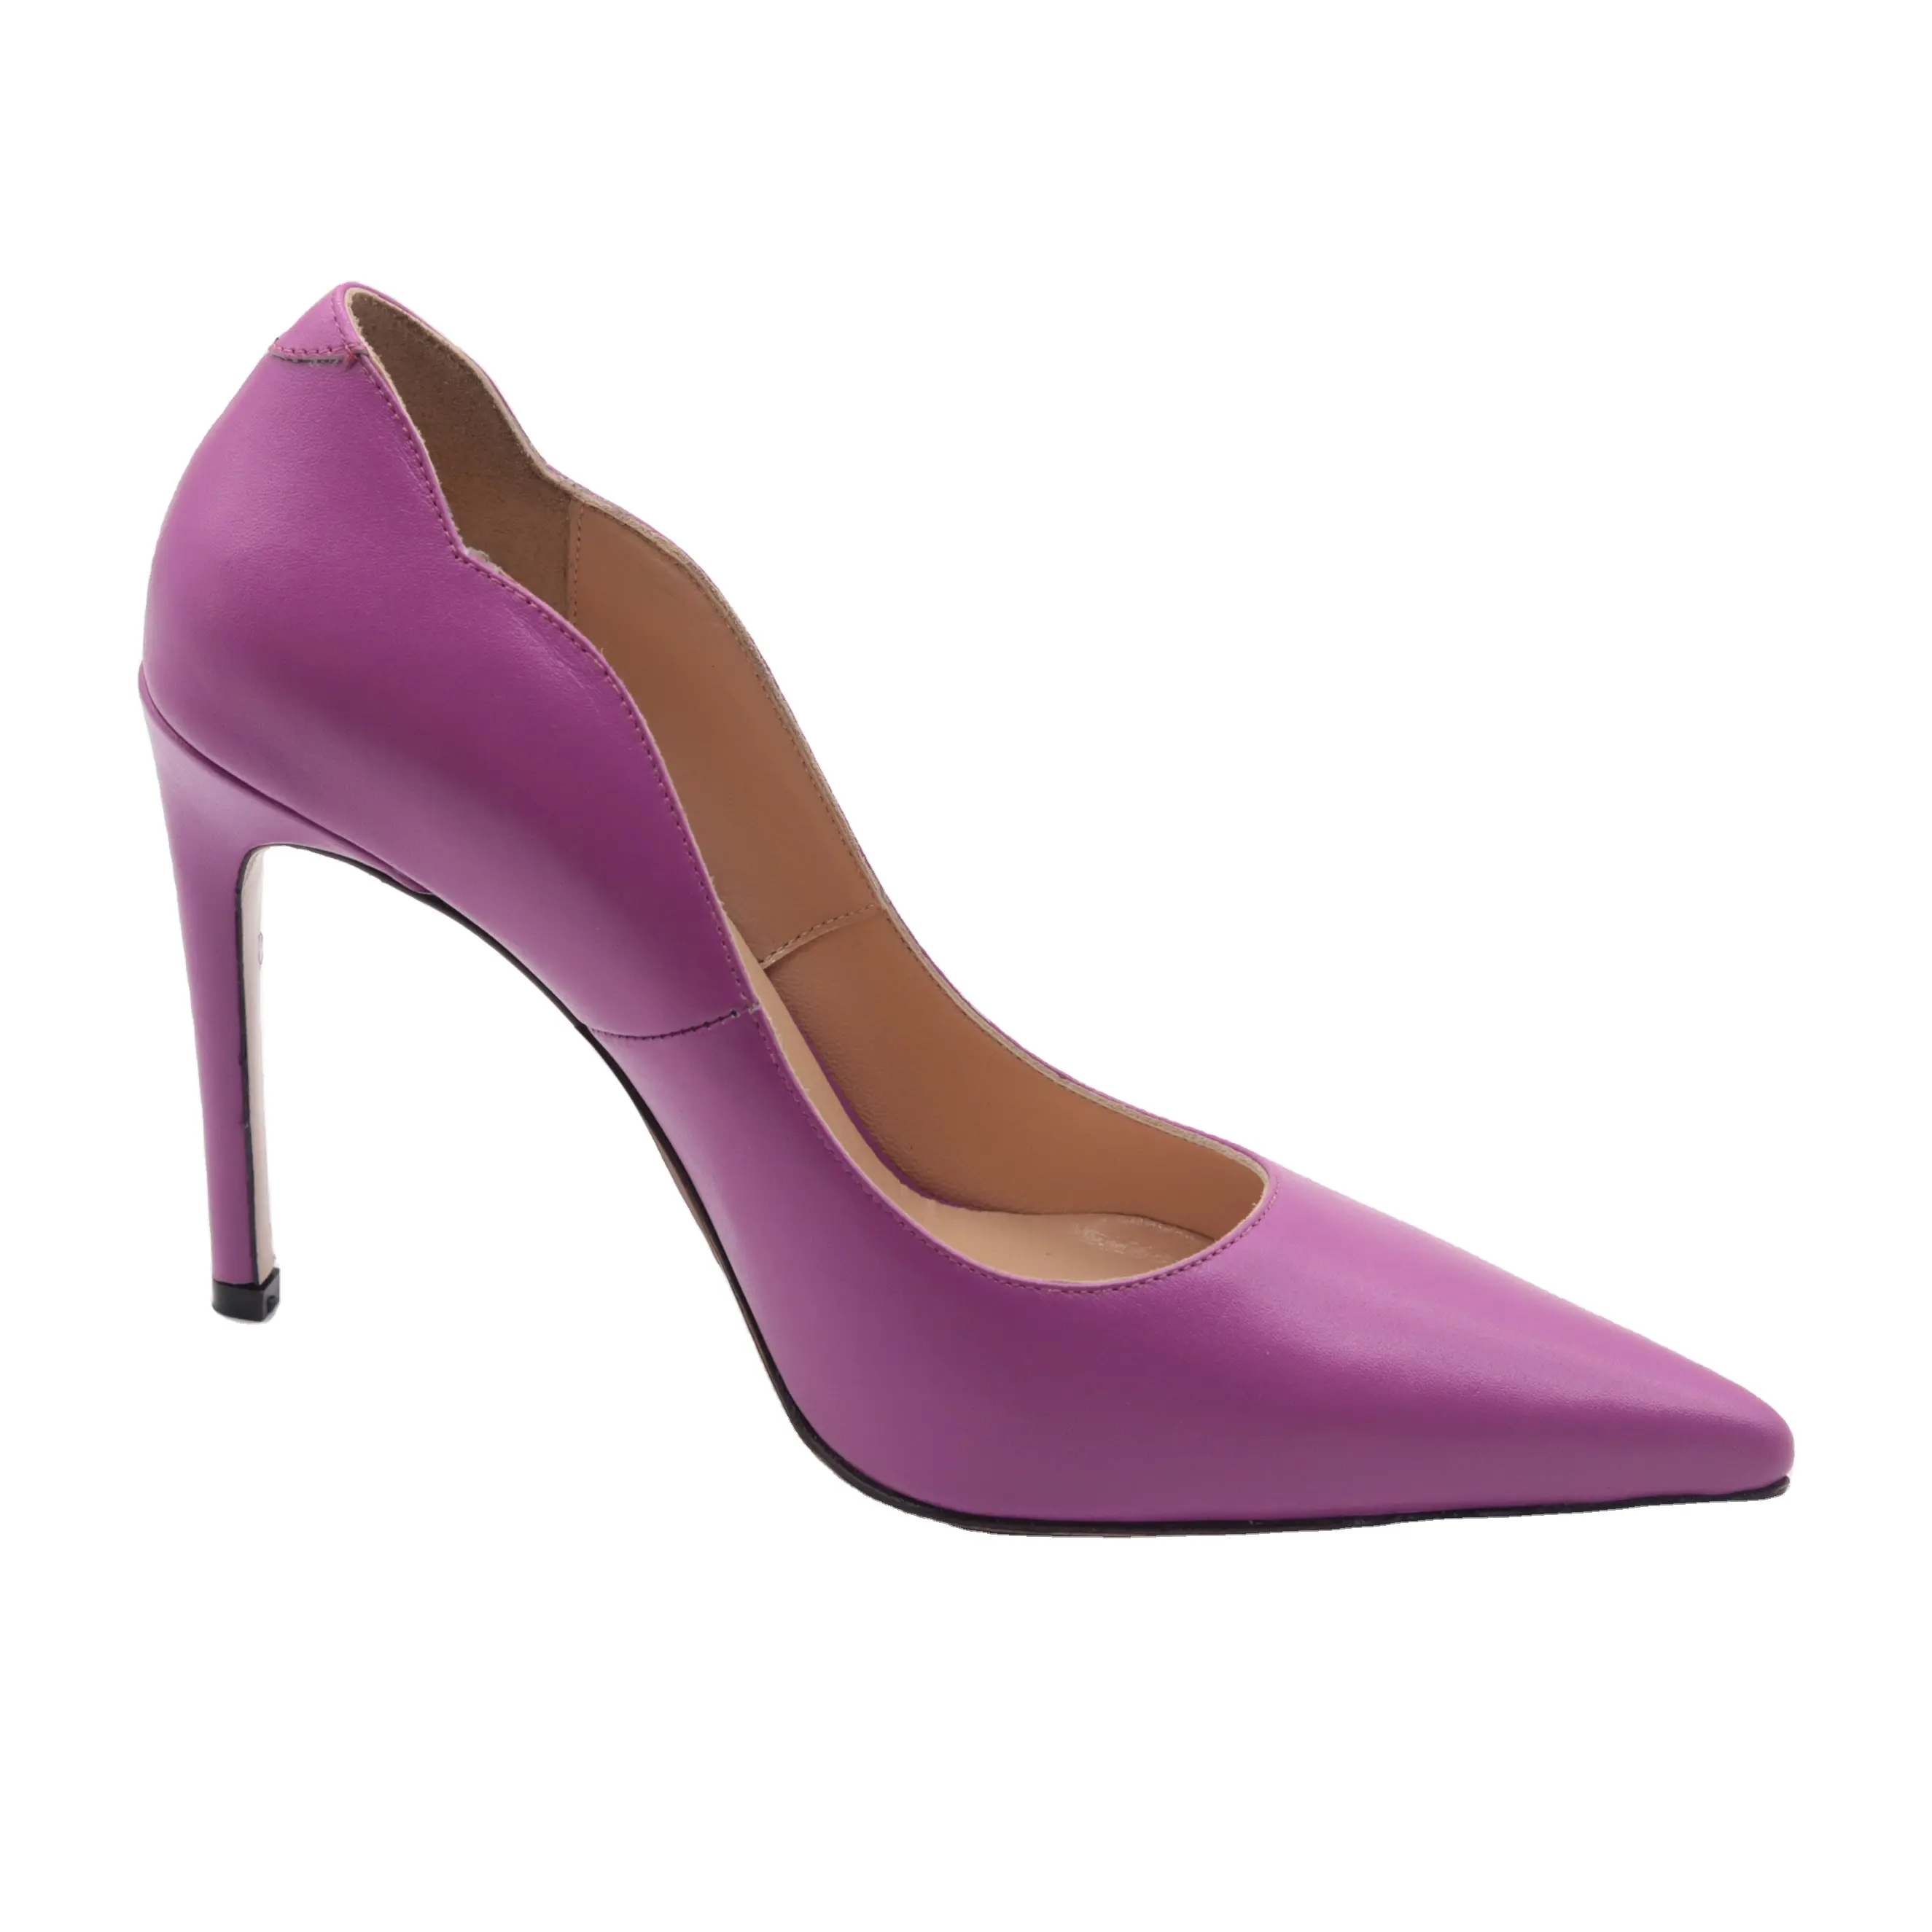 Pink Colour Wholesale Shoes high heels Women Heels 2021 Plus Size Colorful Stiletto High heel Women Pumps Shoes